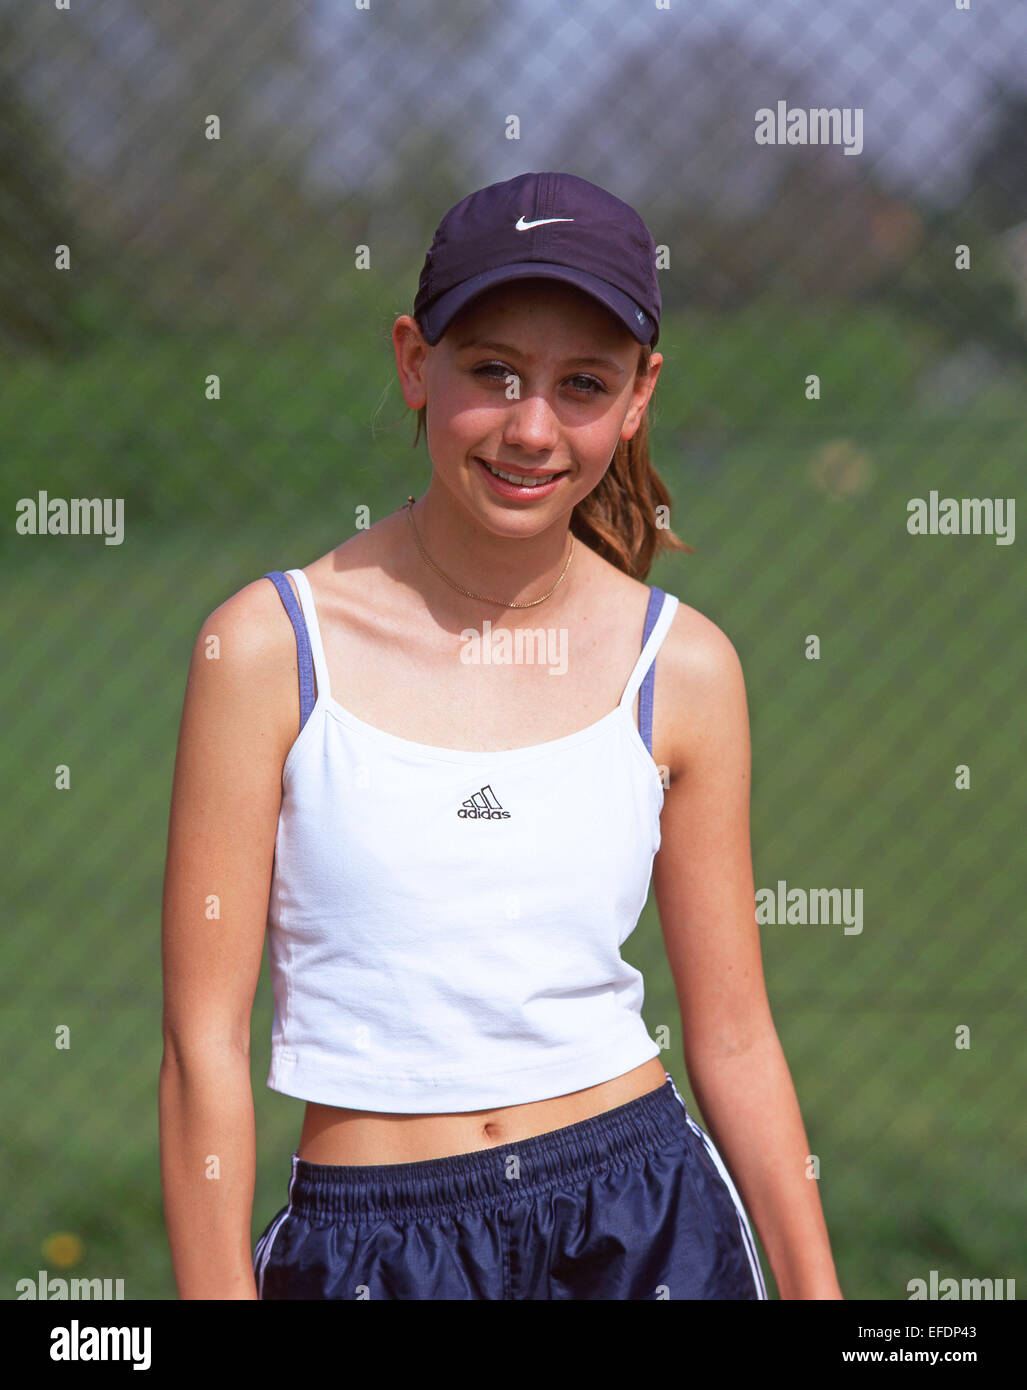 Adolescente Jugador de tenis, Twyford, Berkshire, Inglaterra, Reino Unido Foto de stock